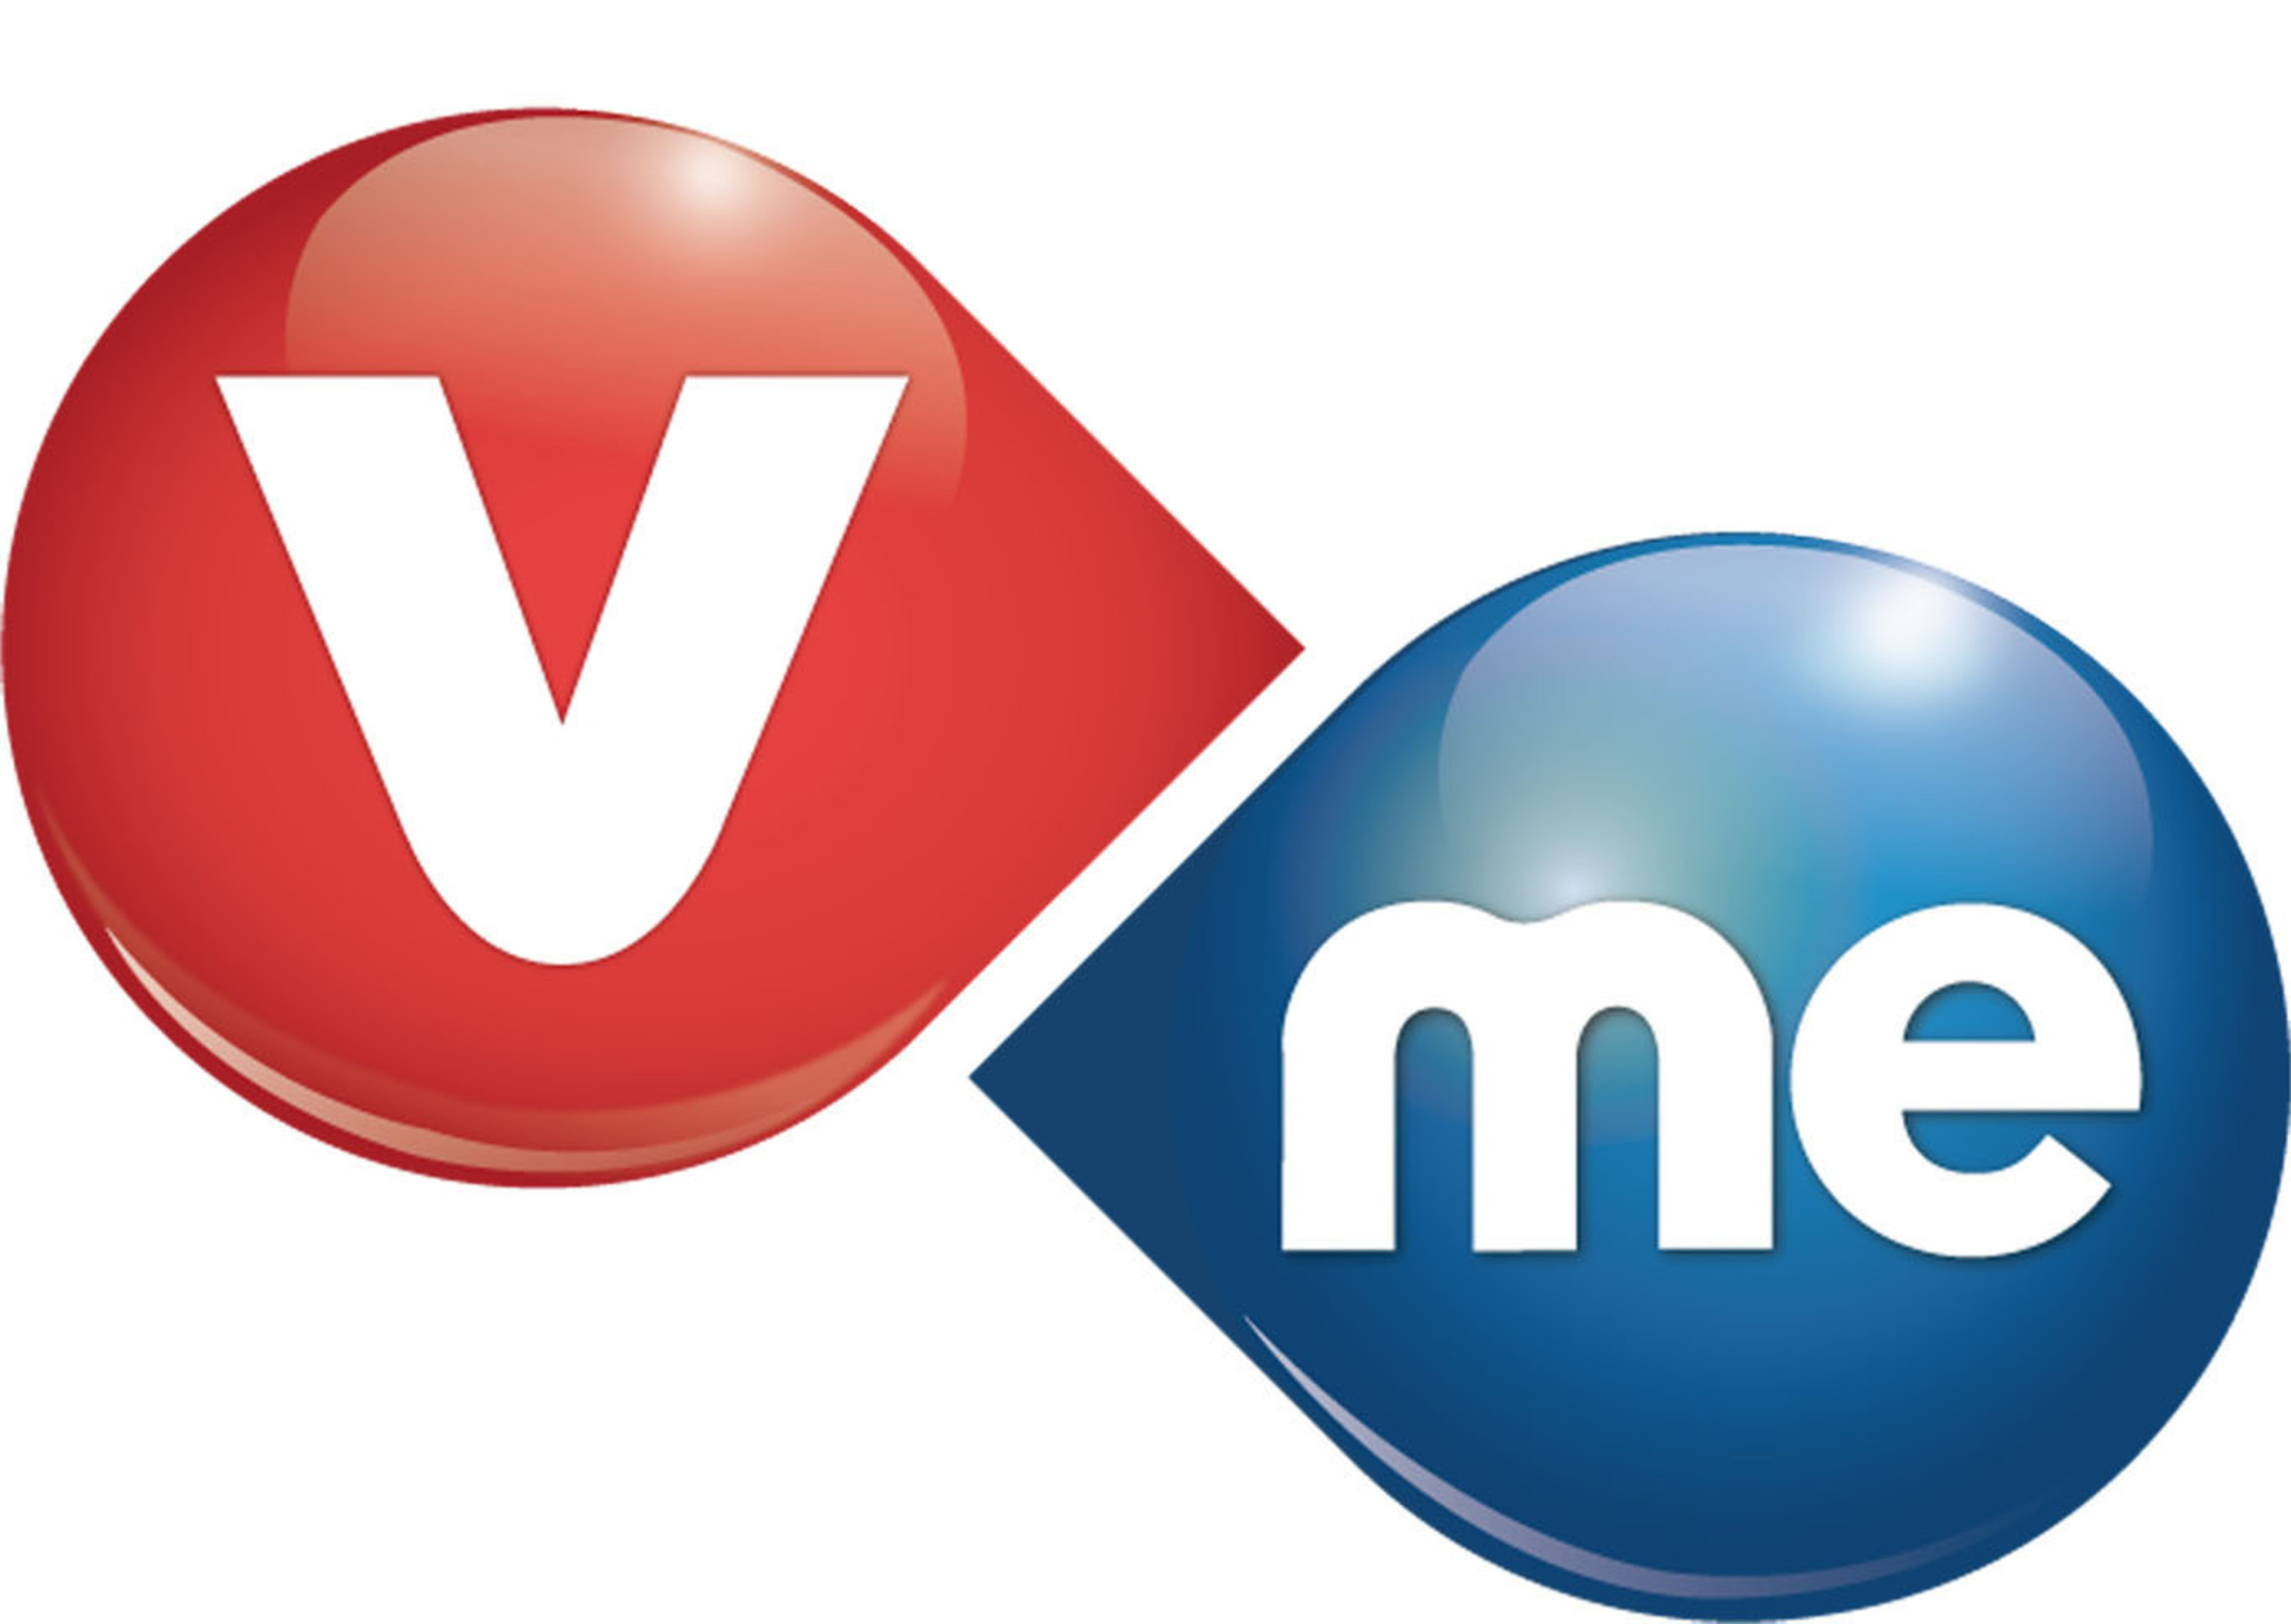 Vme TV Logo. (PRNewsFoto/Vme TV) (PRNewsFoto/VME TV)